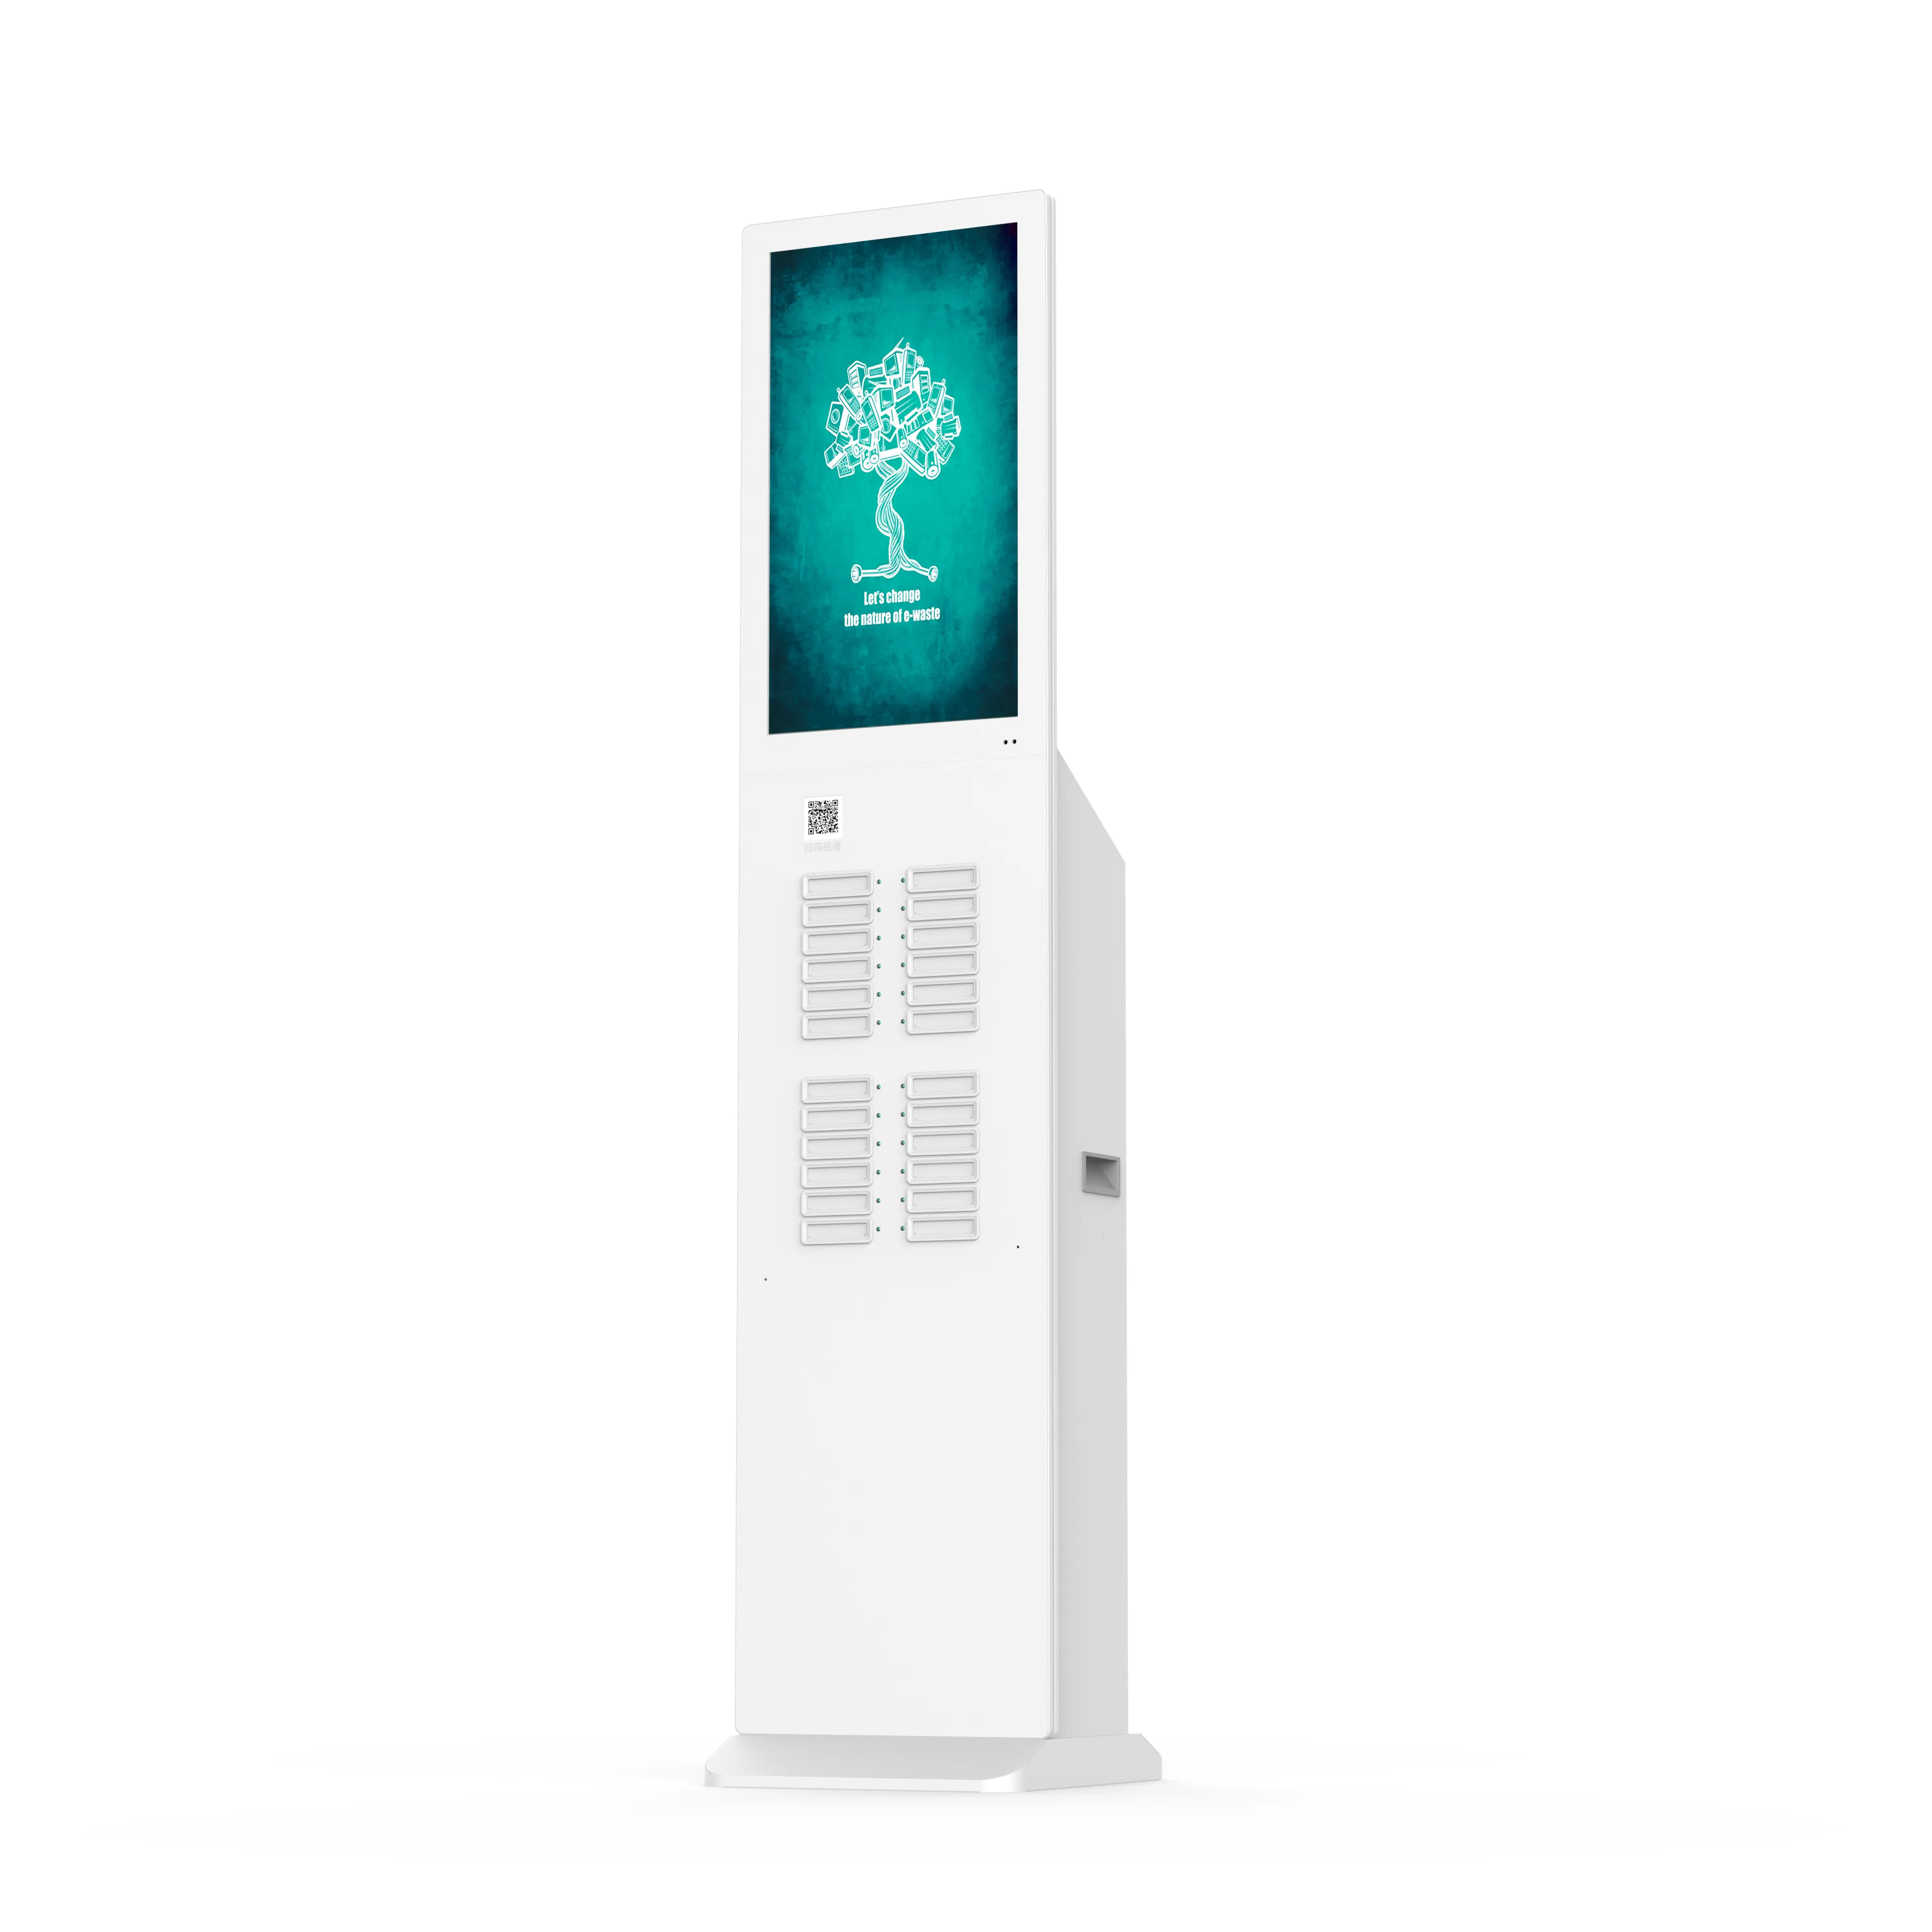 Personalizzato OEM 24 slot HaoYue noleggio pubblico telefono ricarica condivisione power bank station